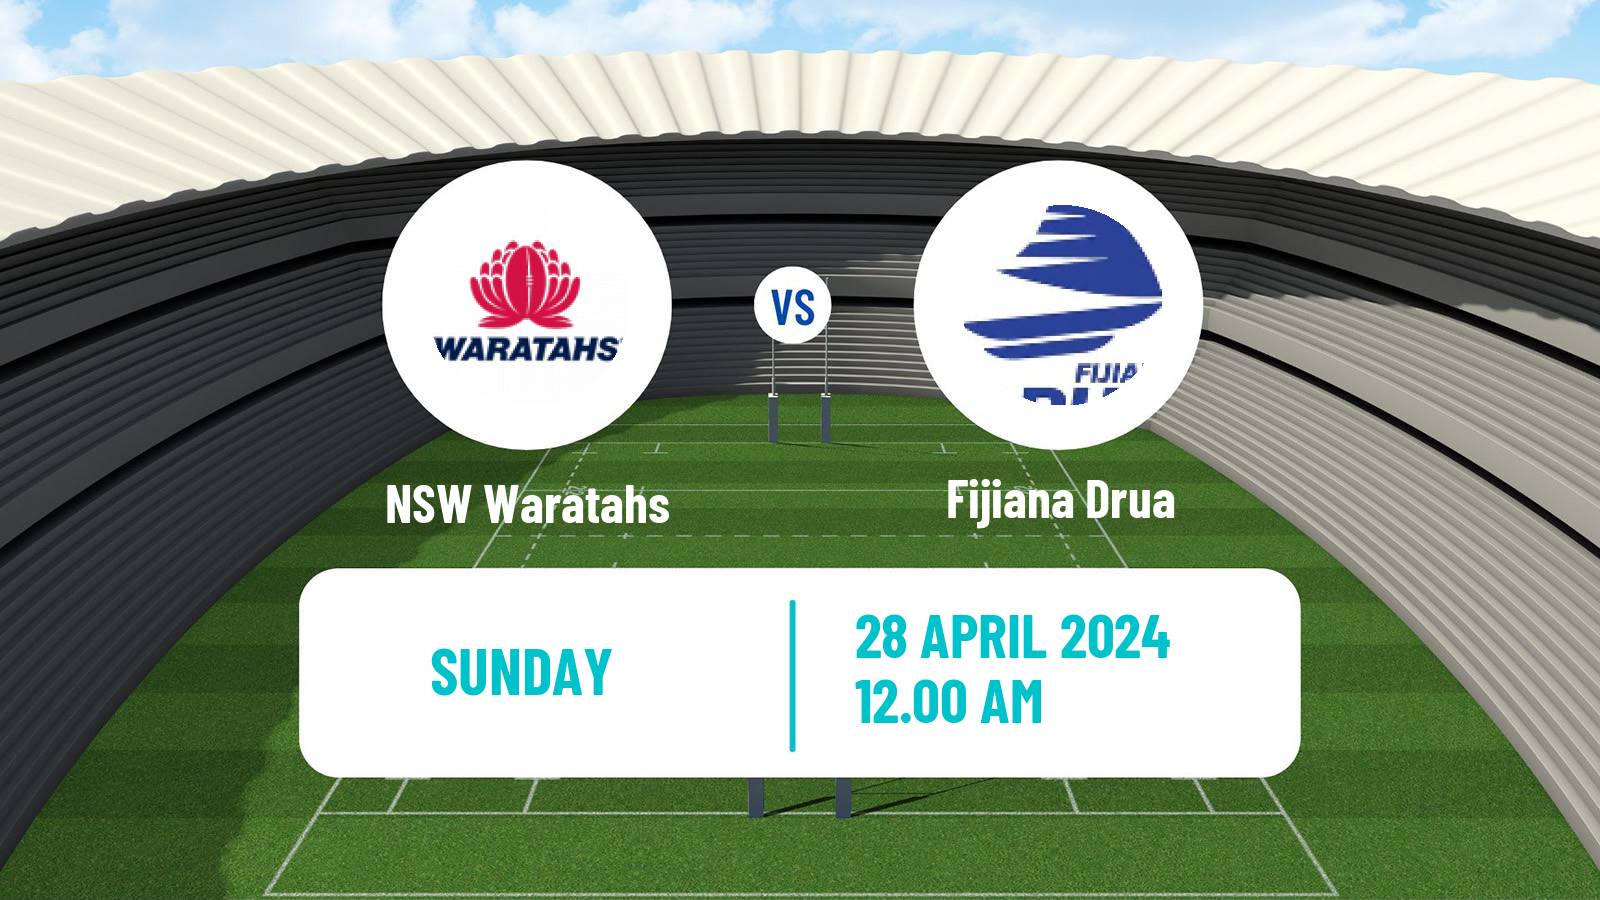 Rugby union Australian Super W Rugby Union NSW Waratahs - Fijiana Drua